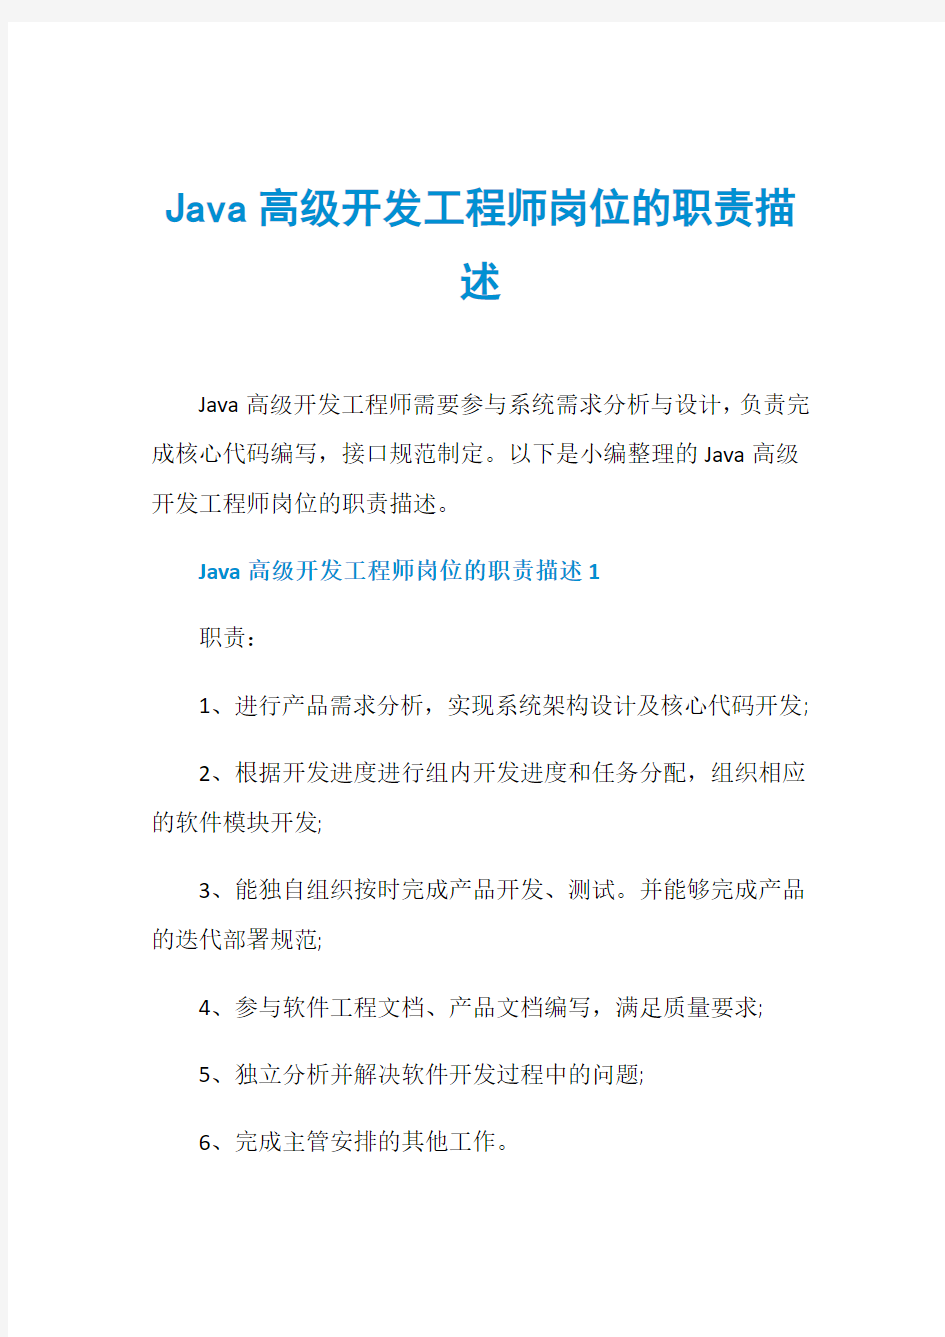 Java高级开发工程师岗位的职责描述